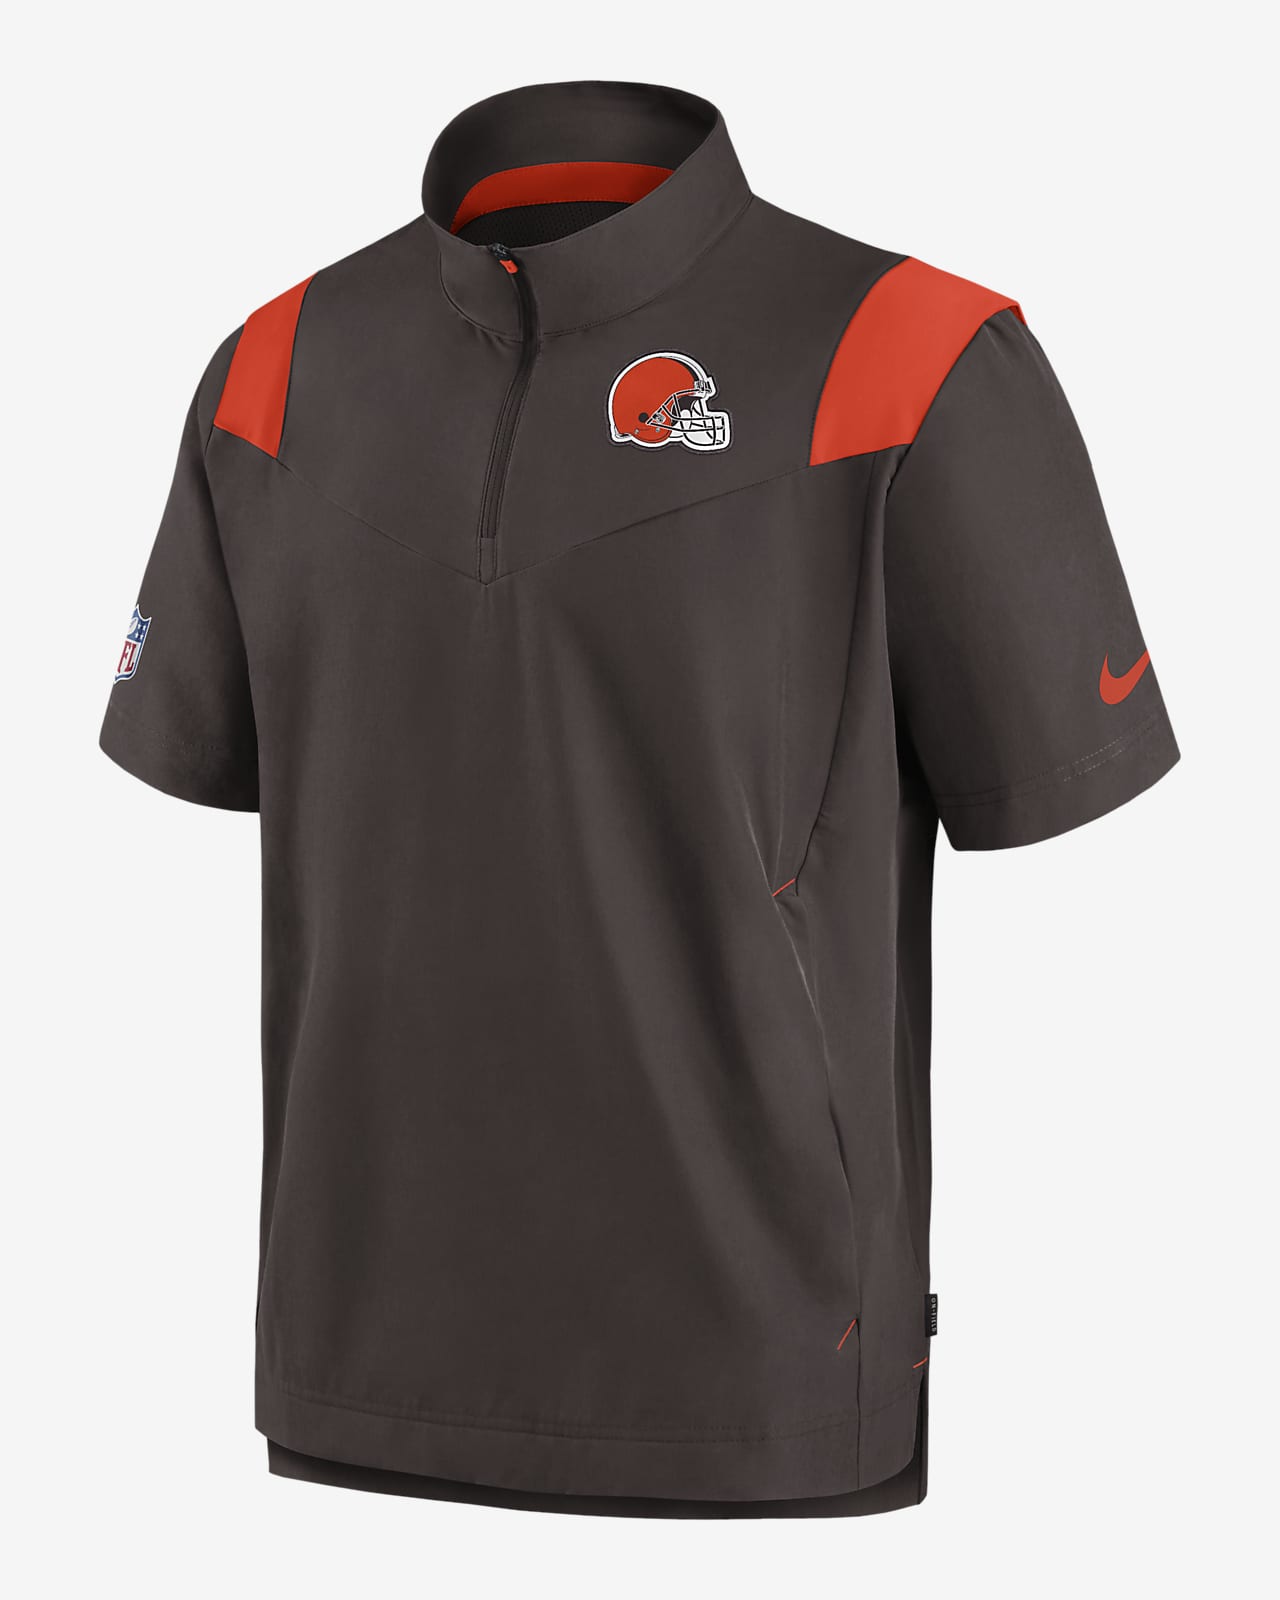 Nike Sideline Coach Lockup (NFL Cleveland Browns) Men's Short-Sleeve Jacket